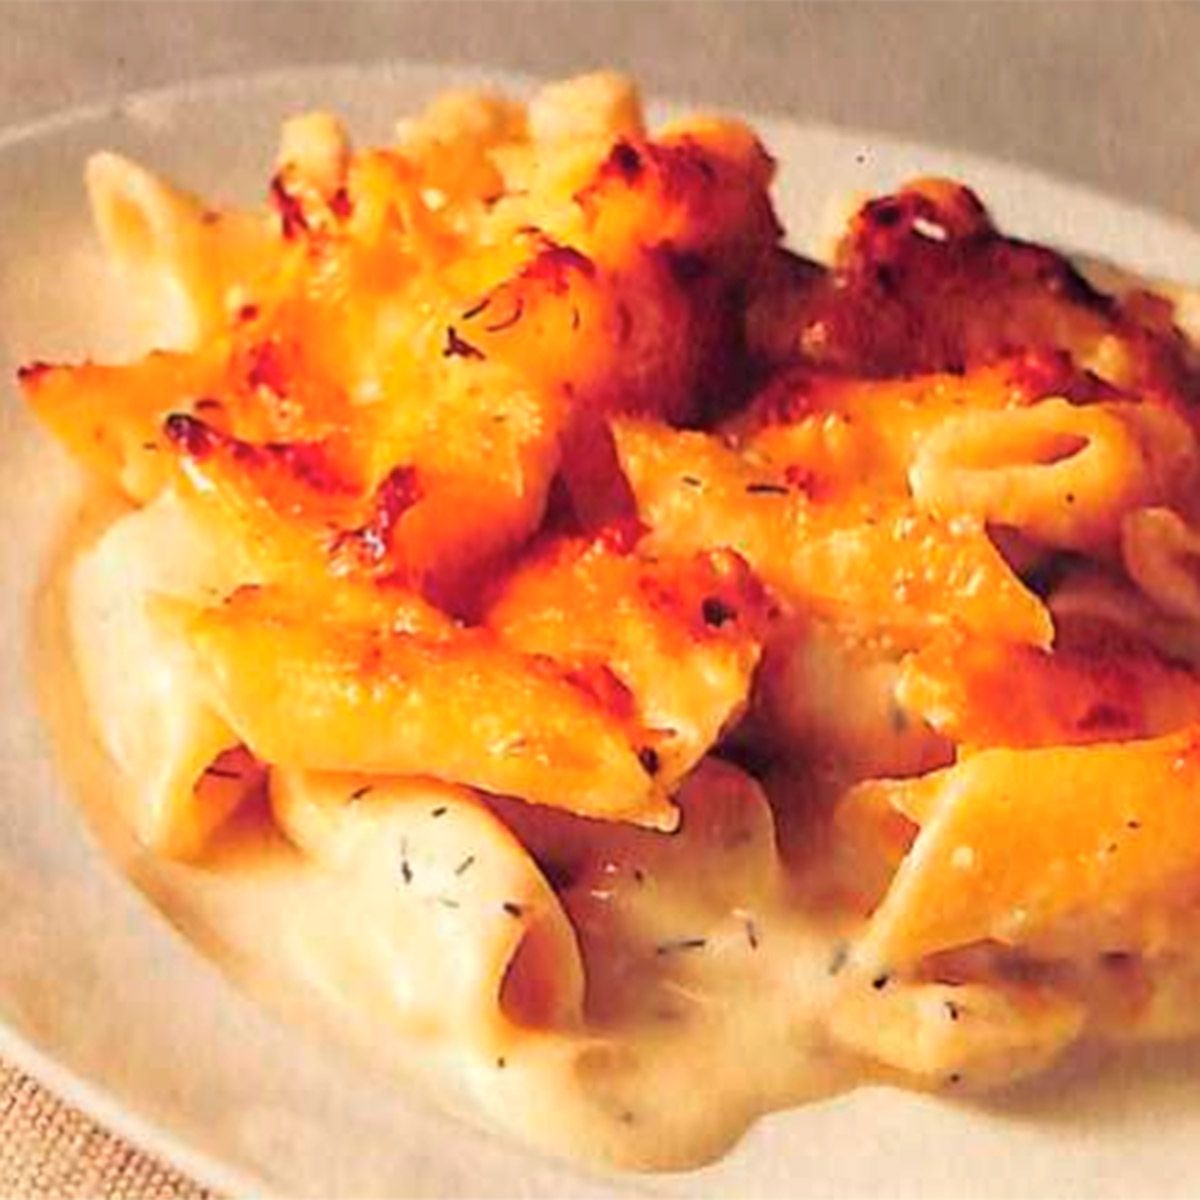 Four-cheese pasta gratin - vegetarian midweek meal